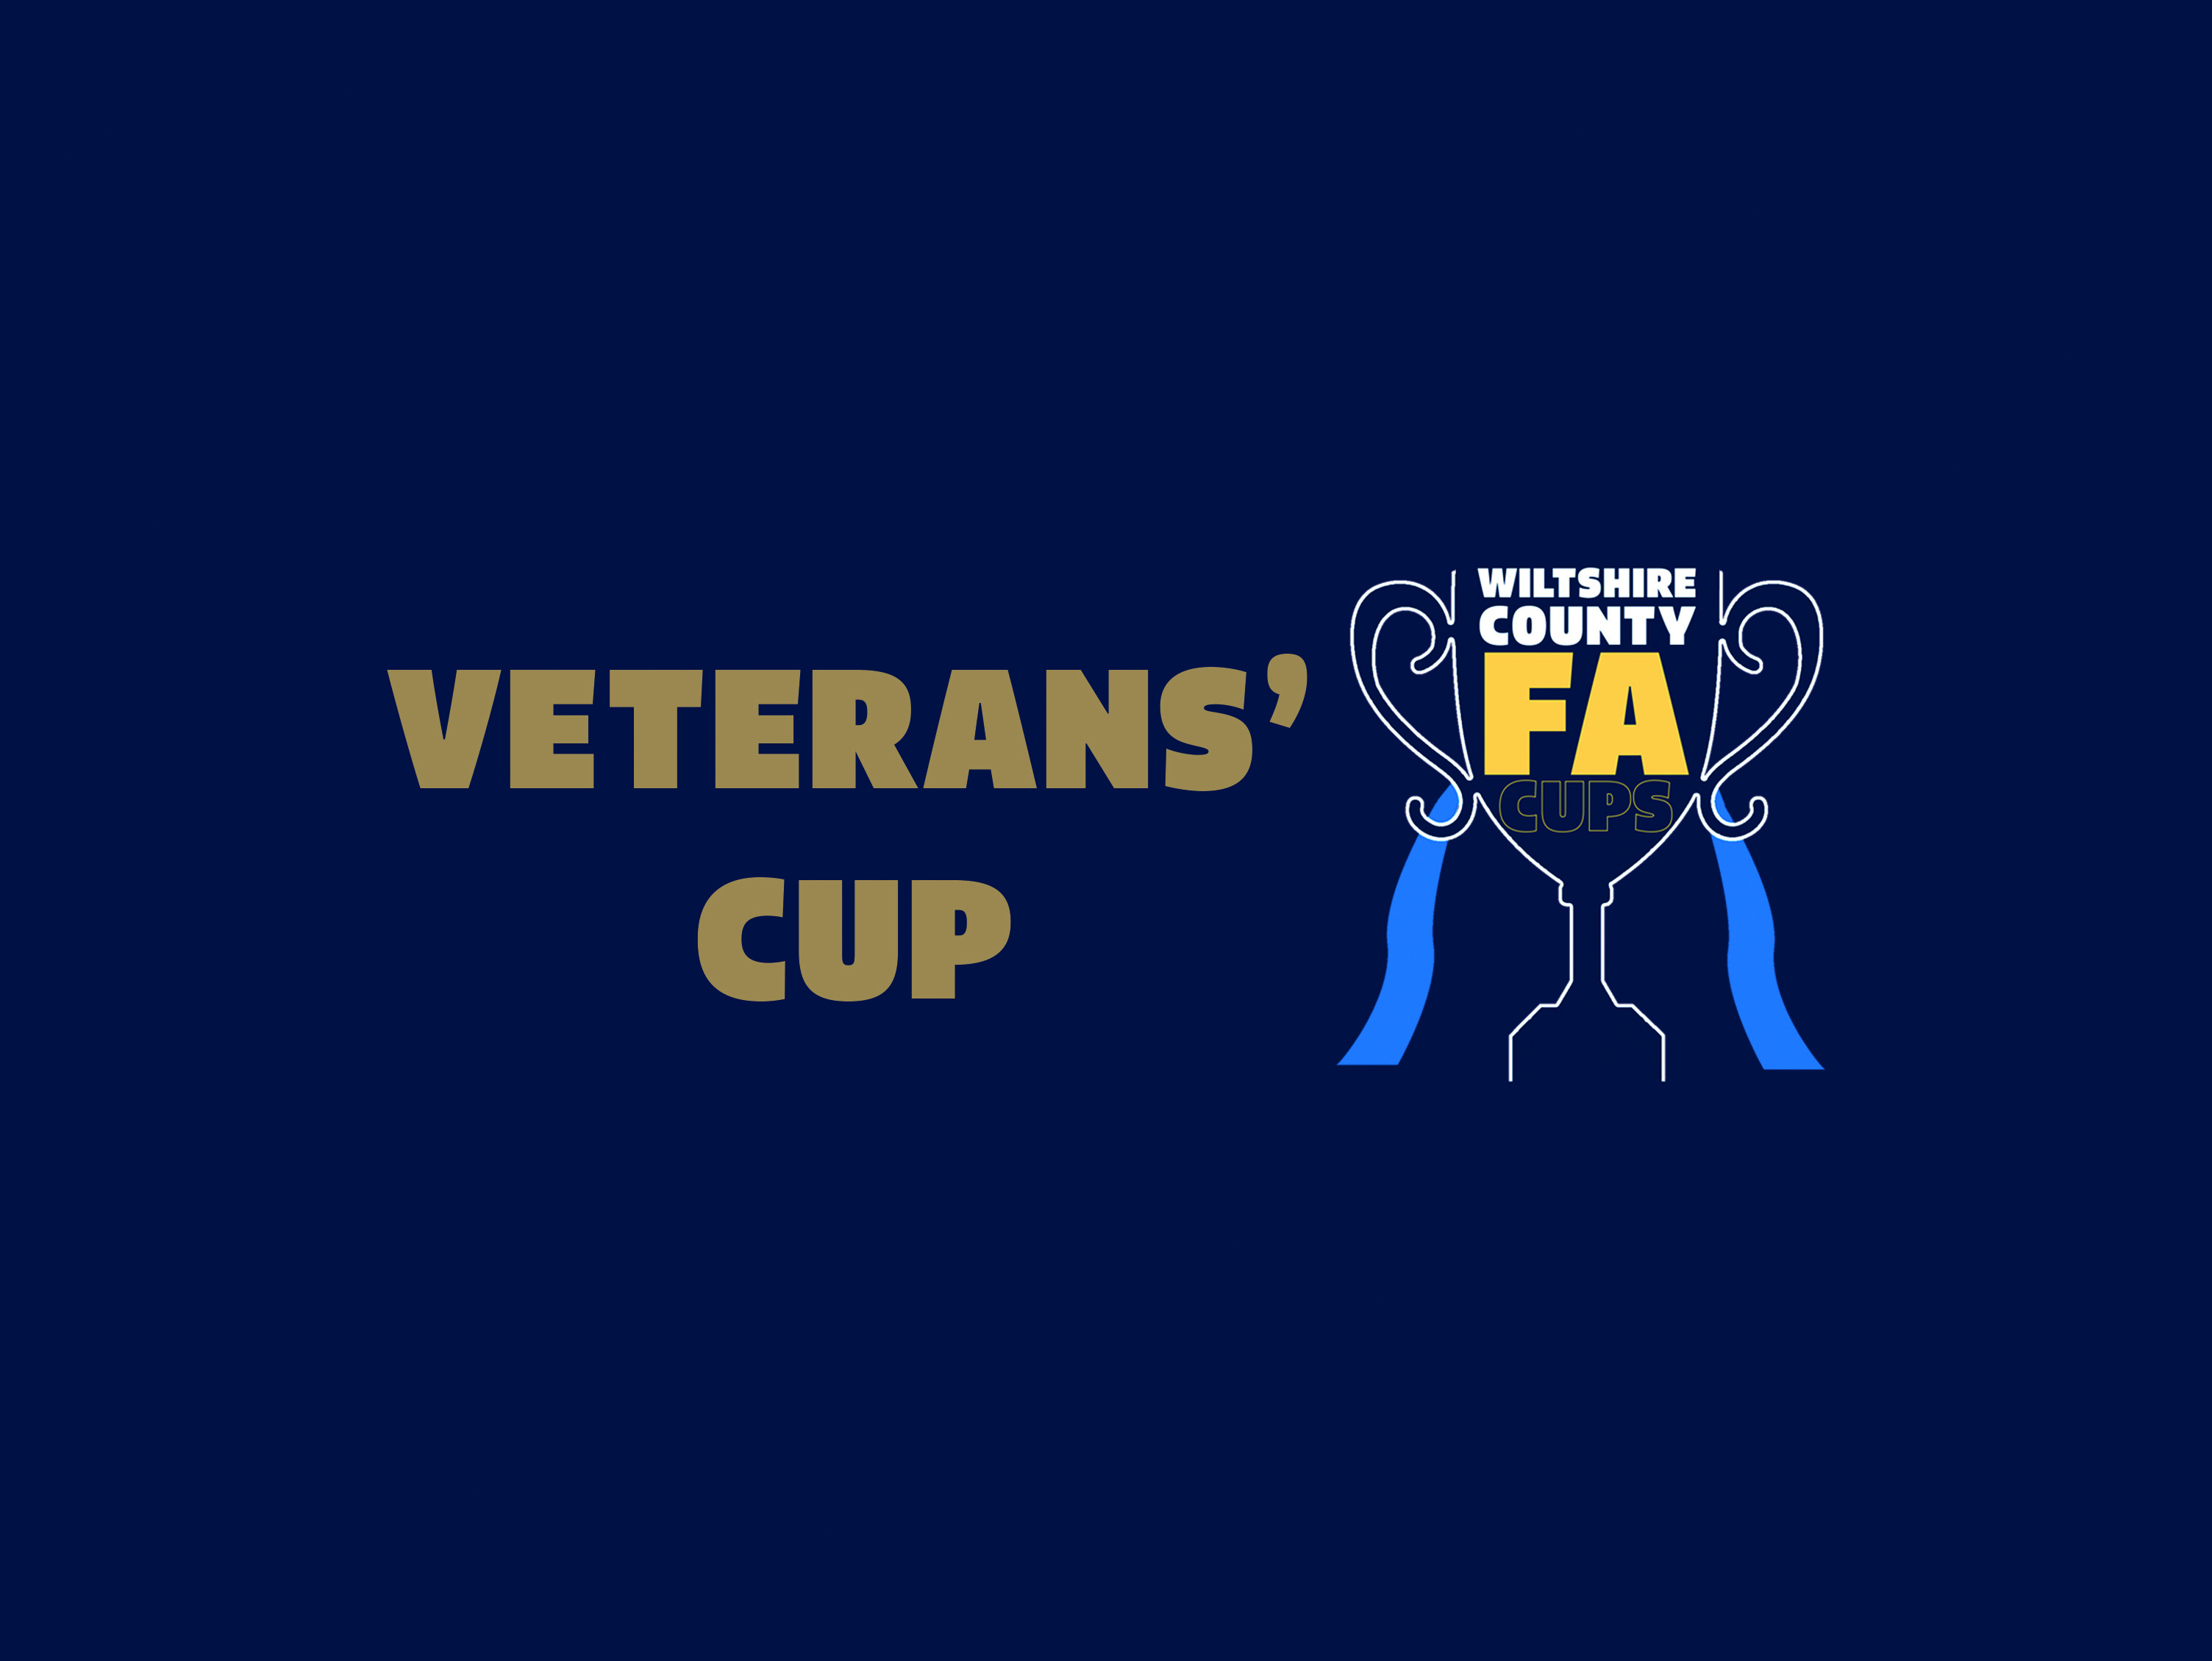 VETERANS' CUP Wiltshire FA